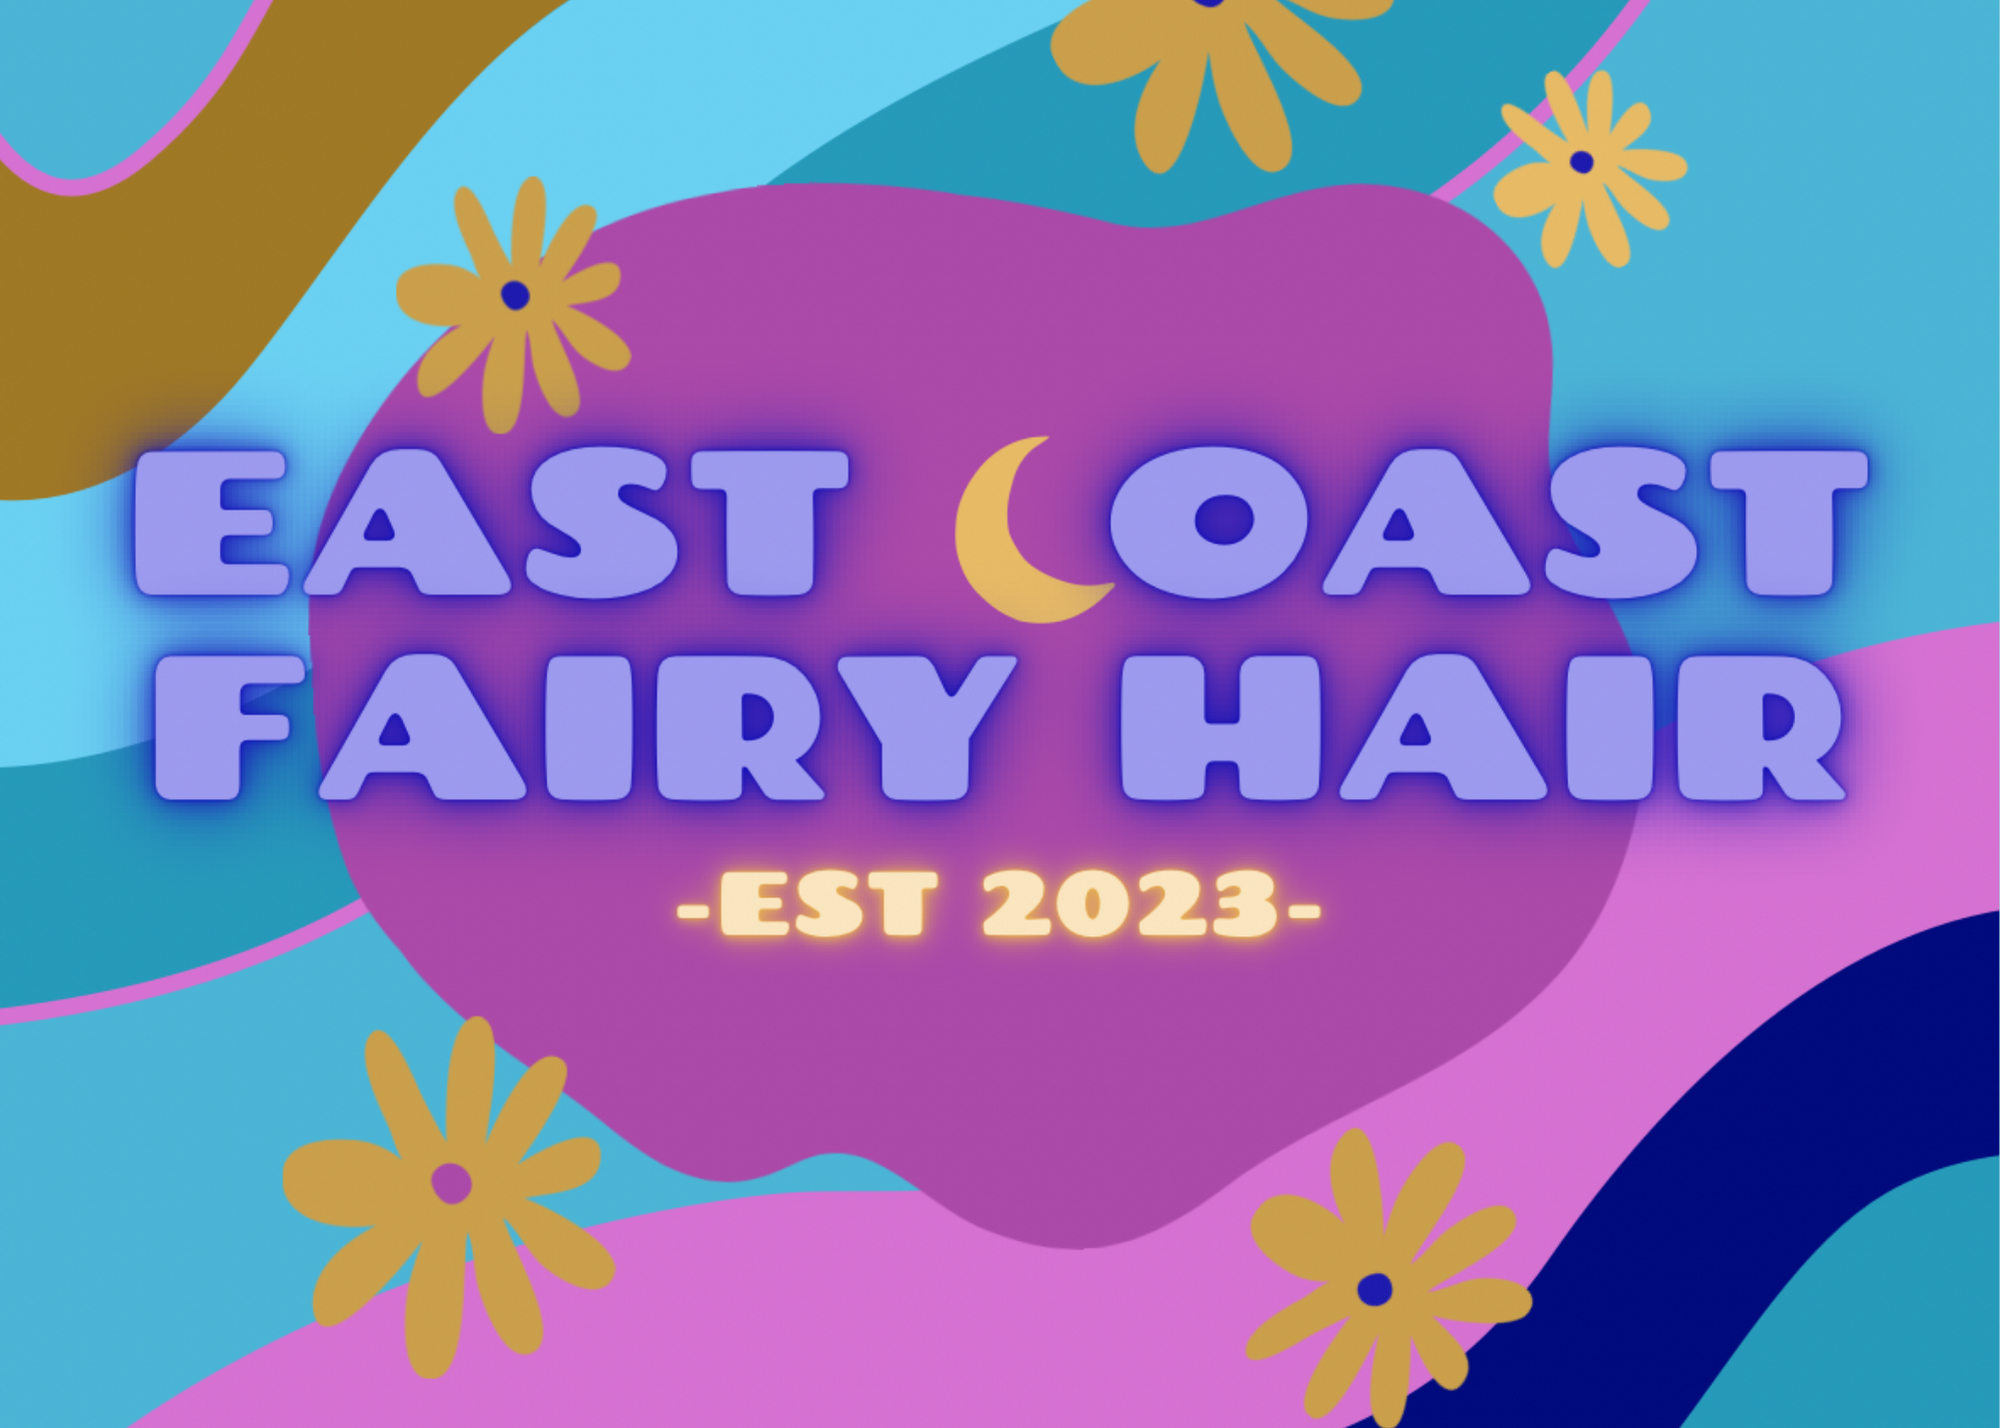 Ecfairyhair.com - 1 - Fairy April (East Coast Fairy Hair).png